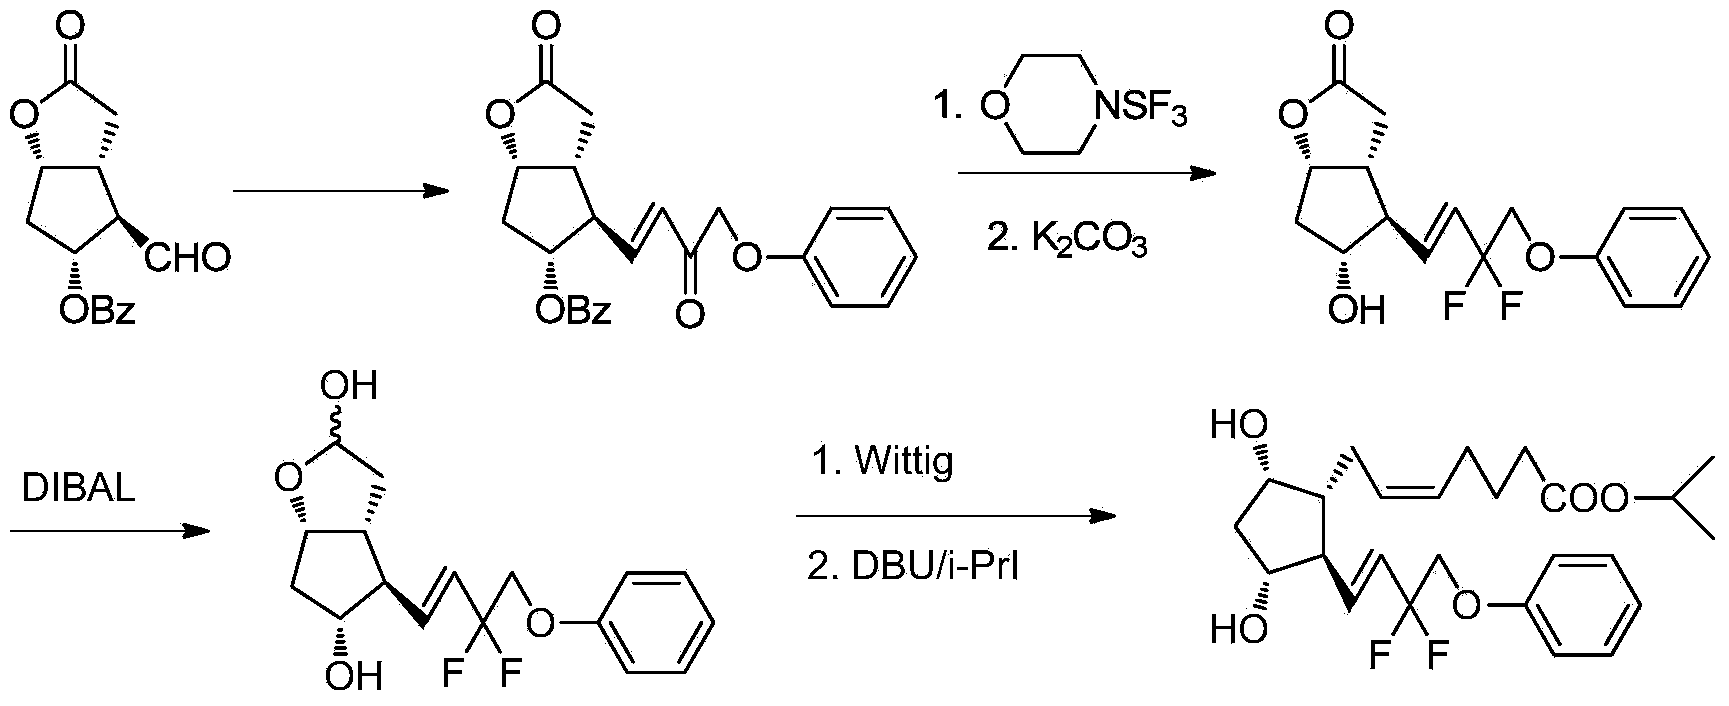 Novel method of synthesizing tafluprost